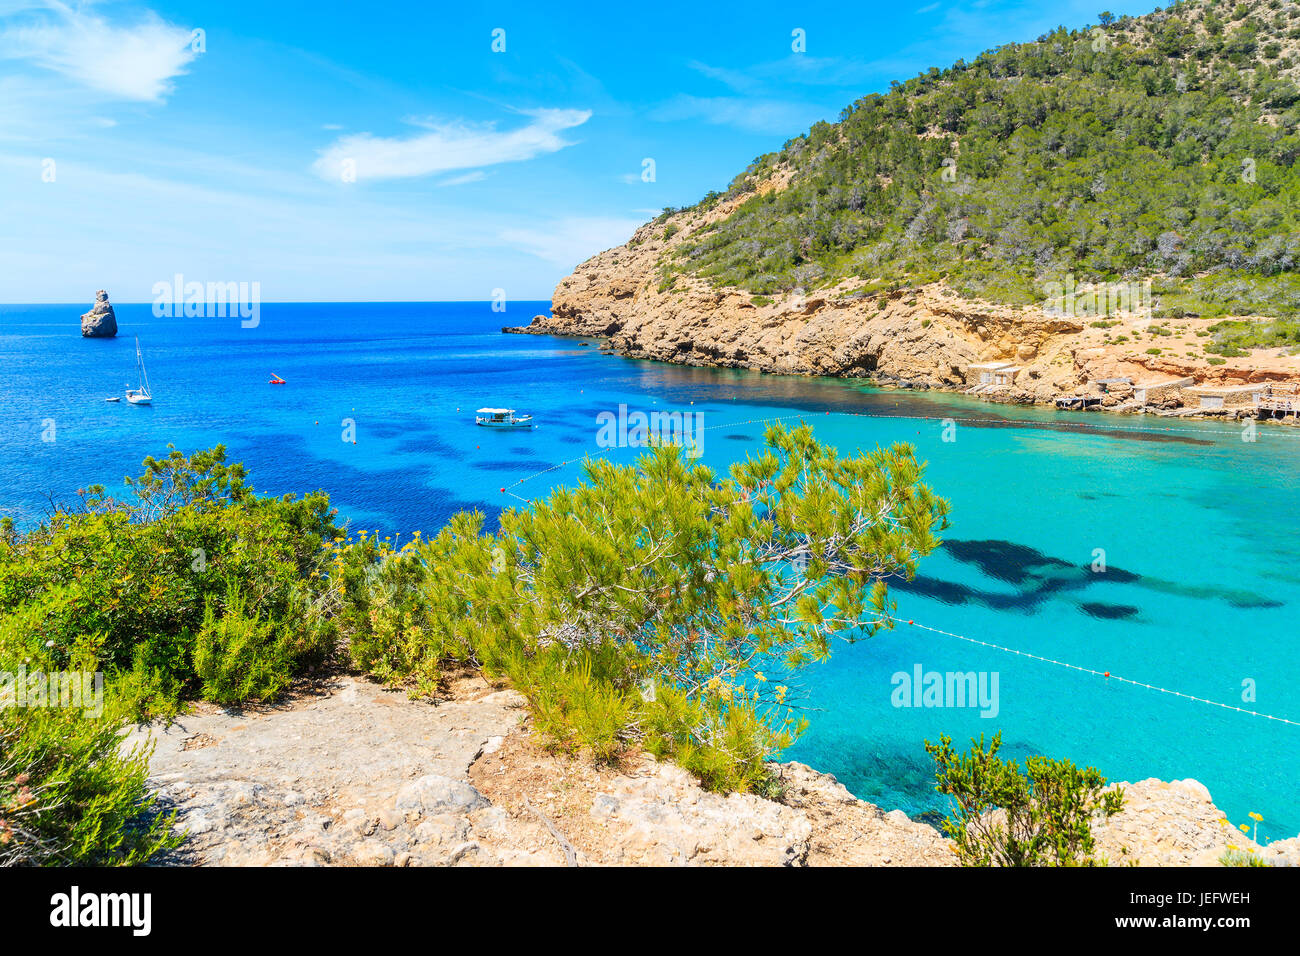 Blick auf Cala Benirras Bucht mit Fischerboot am azurblauen Meer Wasser, Insel Ibiza, Spanien Stockfoto